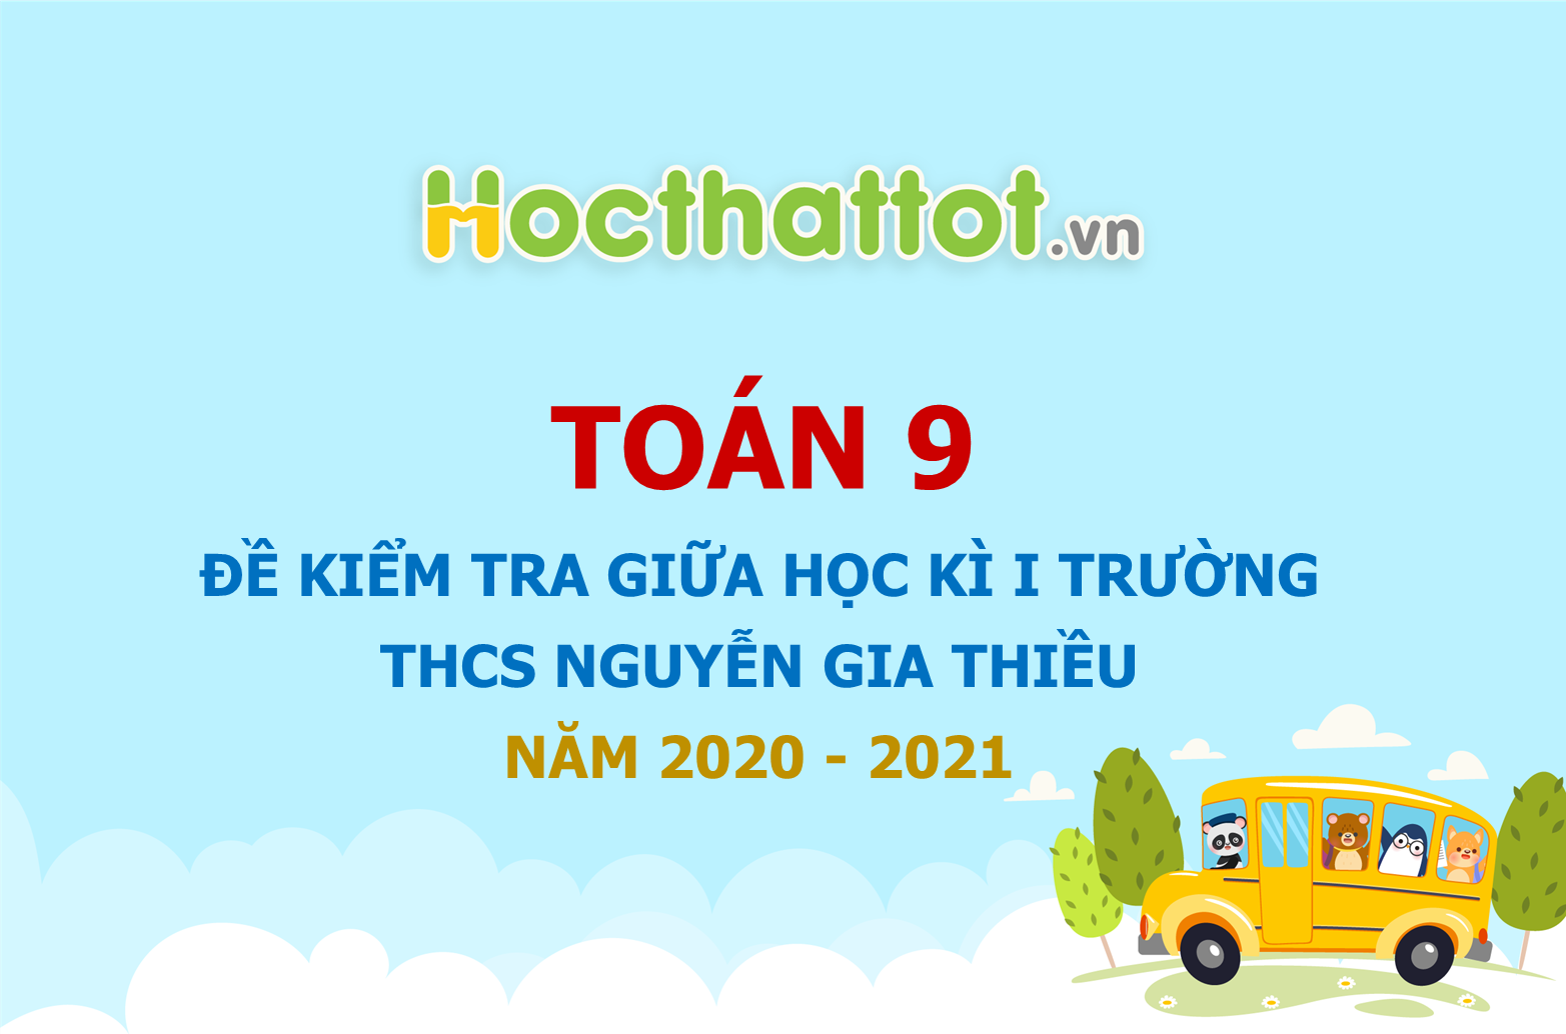 de-kiem-tra-giua-hoc-ki-1-truong-THCS-Nguyen-Gia-Thieu-nam-2020-2021.1.jpg